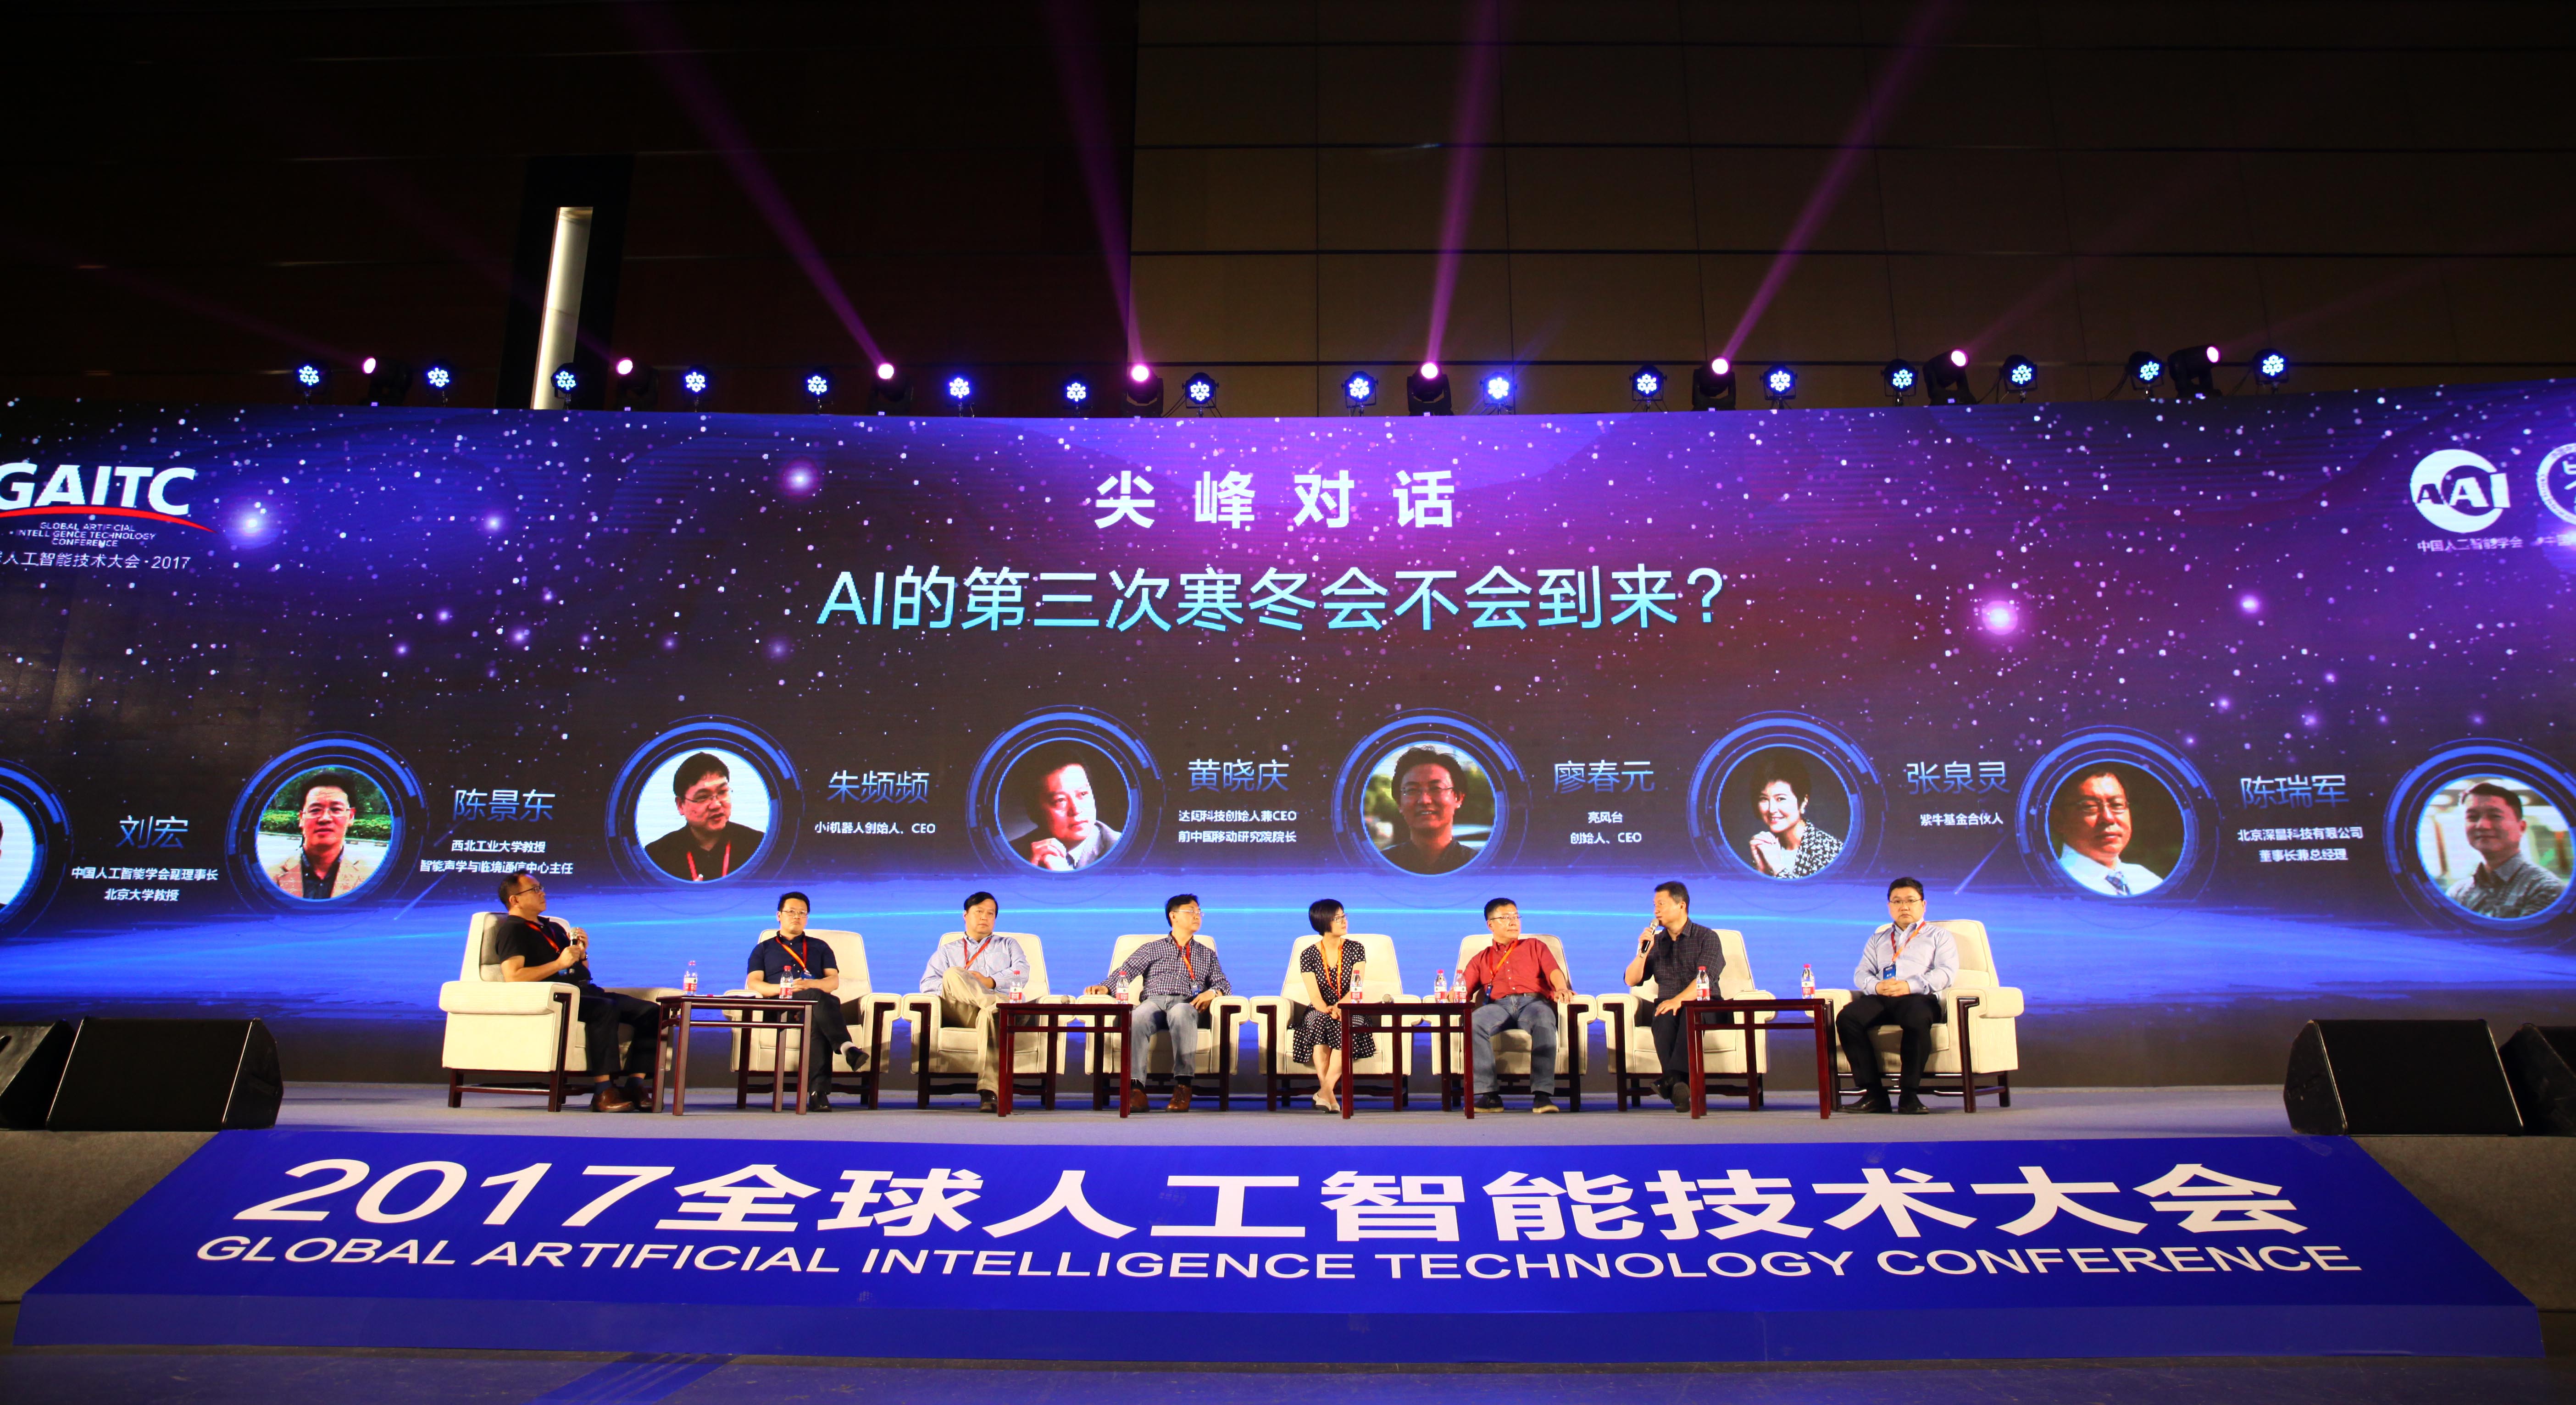 2017·全球人工智能技术大会现场回顾